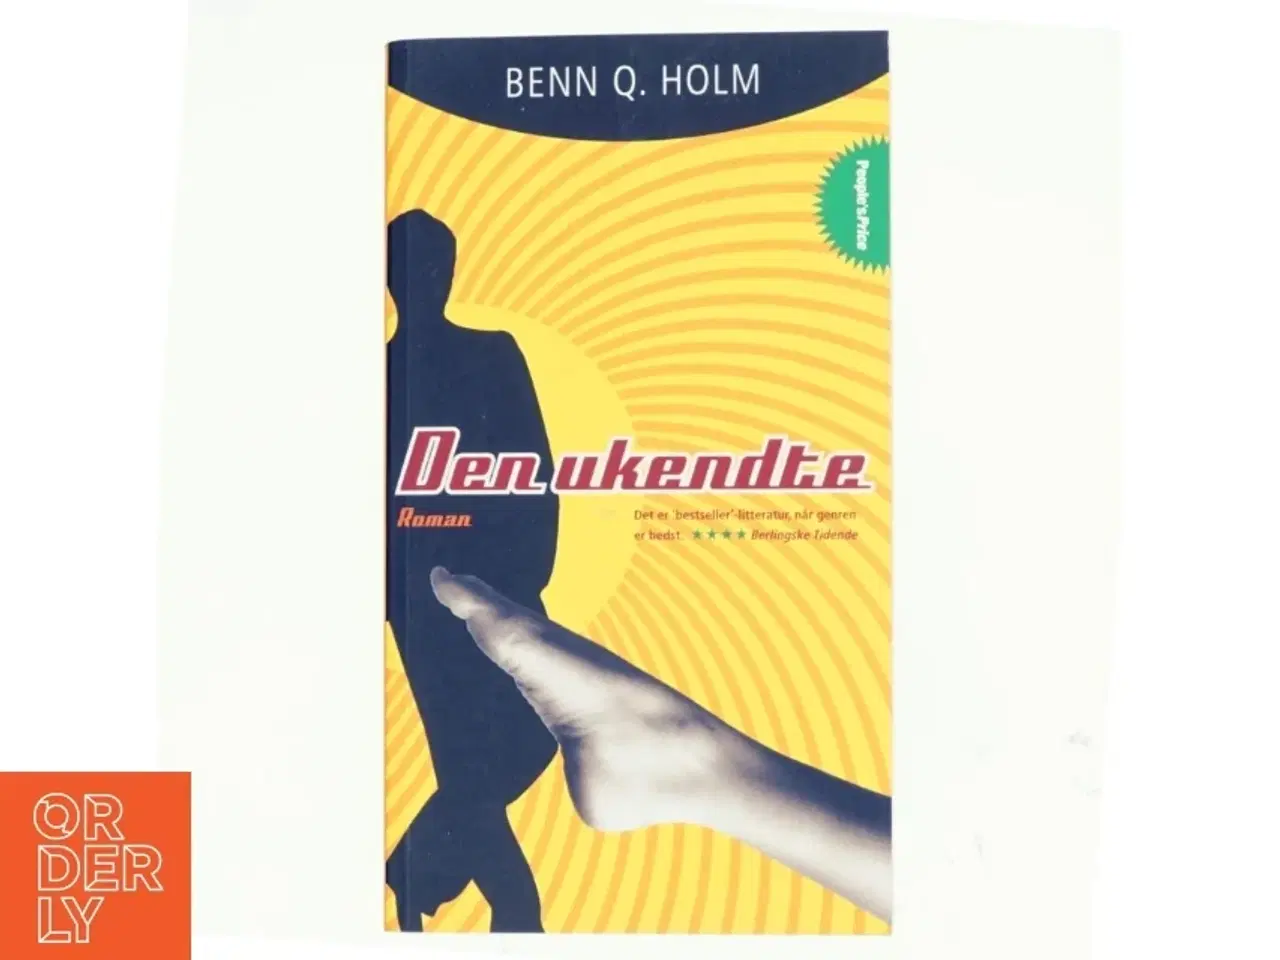 Billede 1 - Den ukendte : roman af Benn Q. Holm (f. 1962) (Bog)